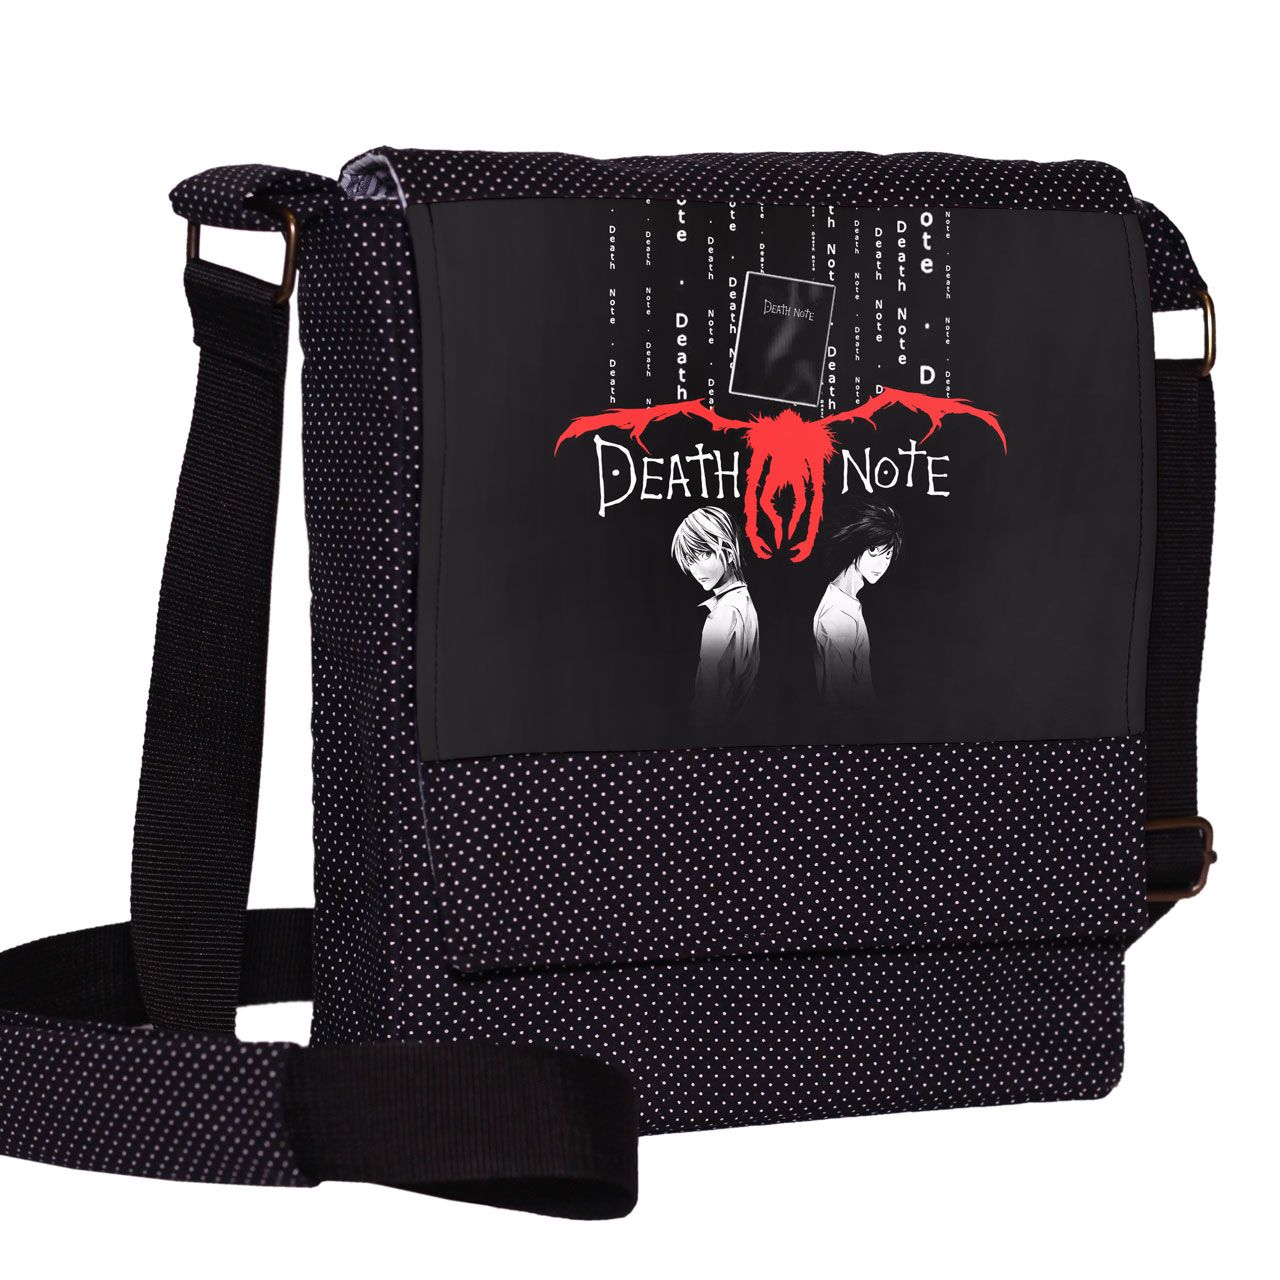 کیف دوشی چی چاپ طرح Death Note کد 65674 -  - 2